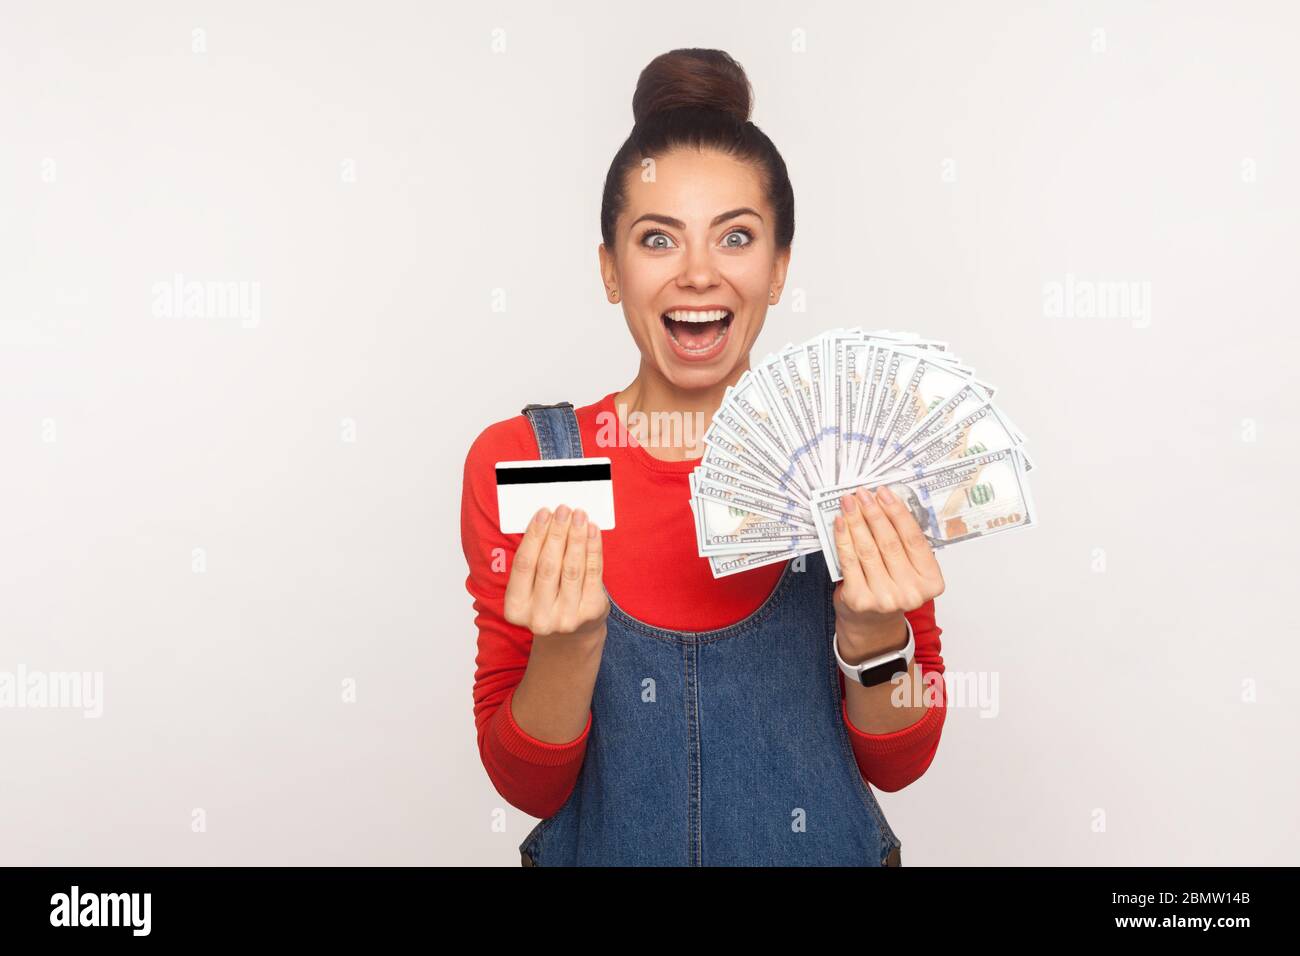 Wow, prêt bancaire, cashback! Portrait de la fille excitée avec cheveux chignon dans les combinaisons de denim tenant la carte de crédit et beaucoup d'argent, choqué par l'argent deposi Banque D'Images